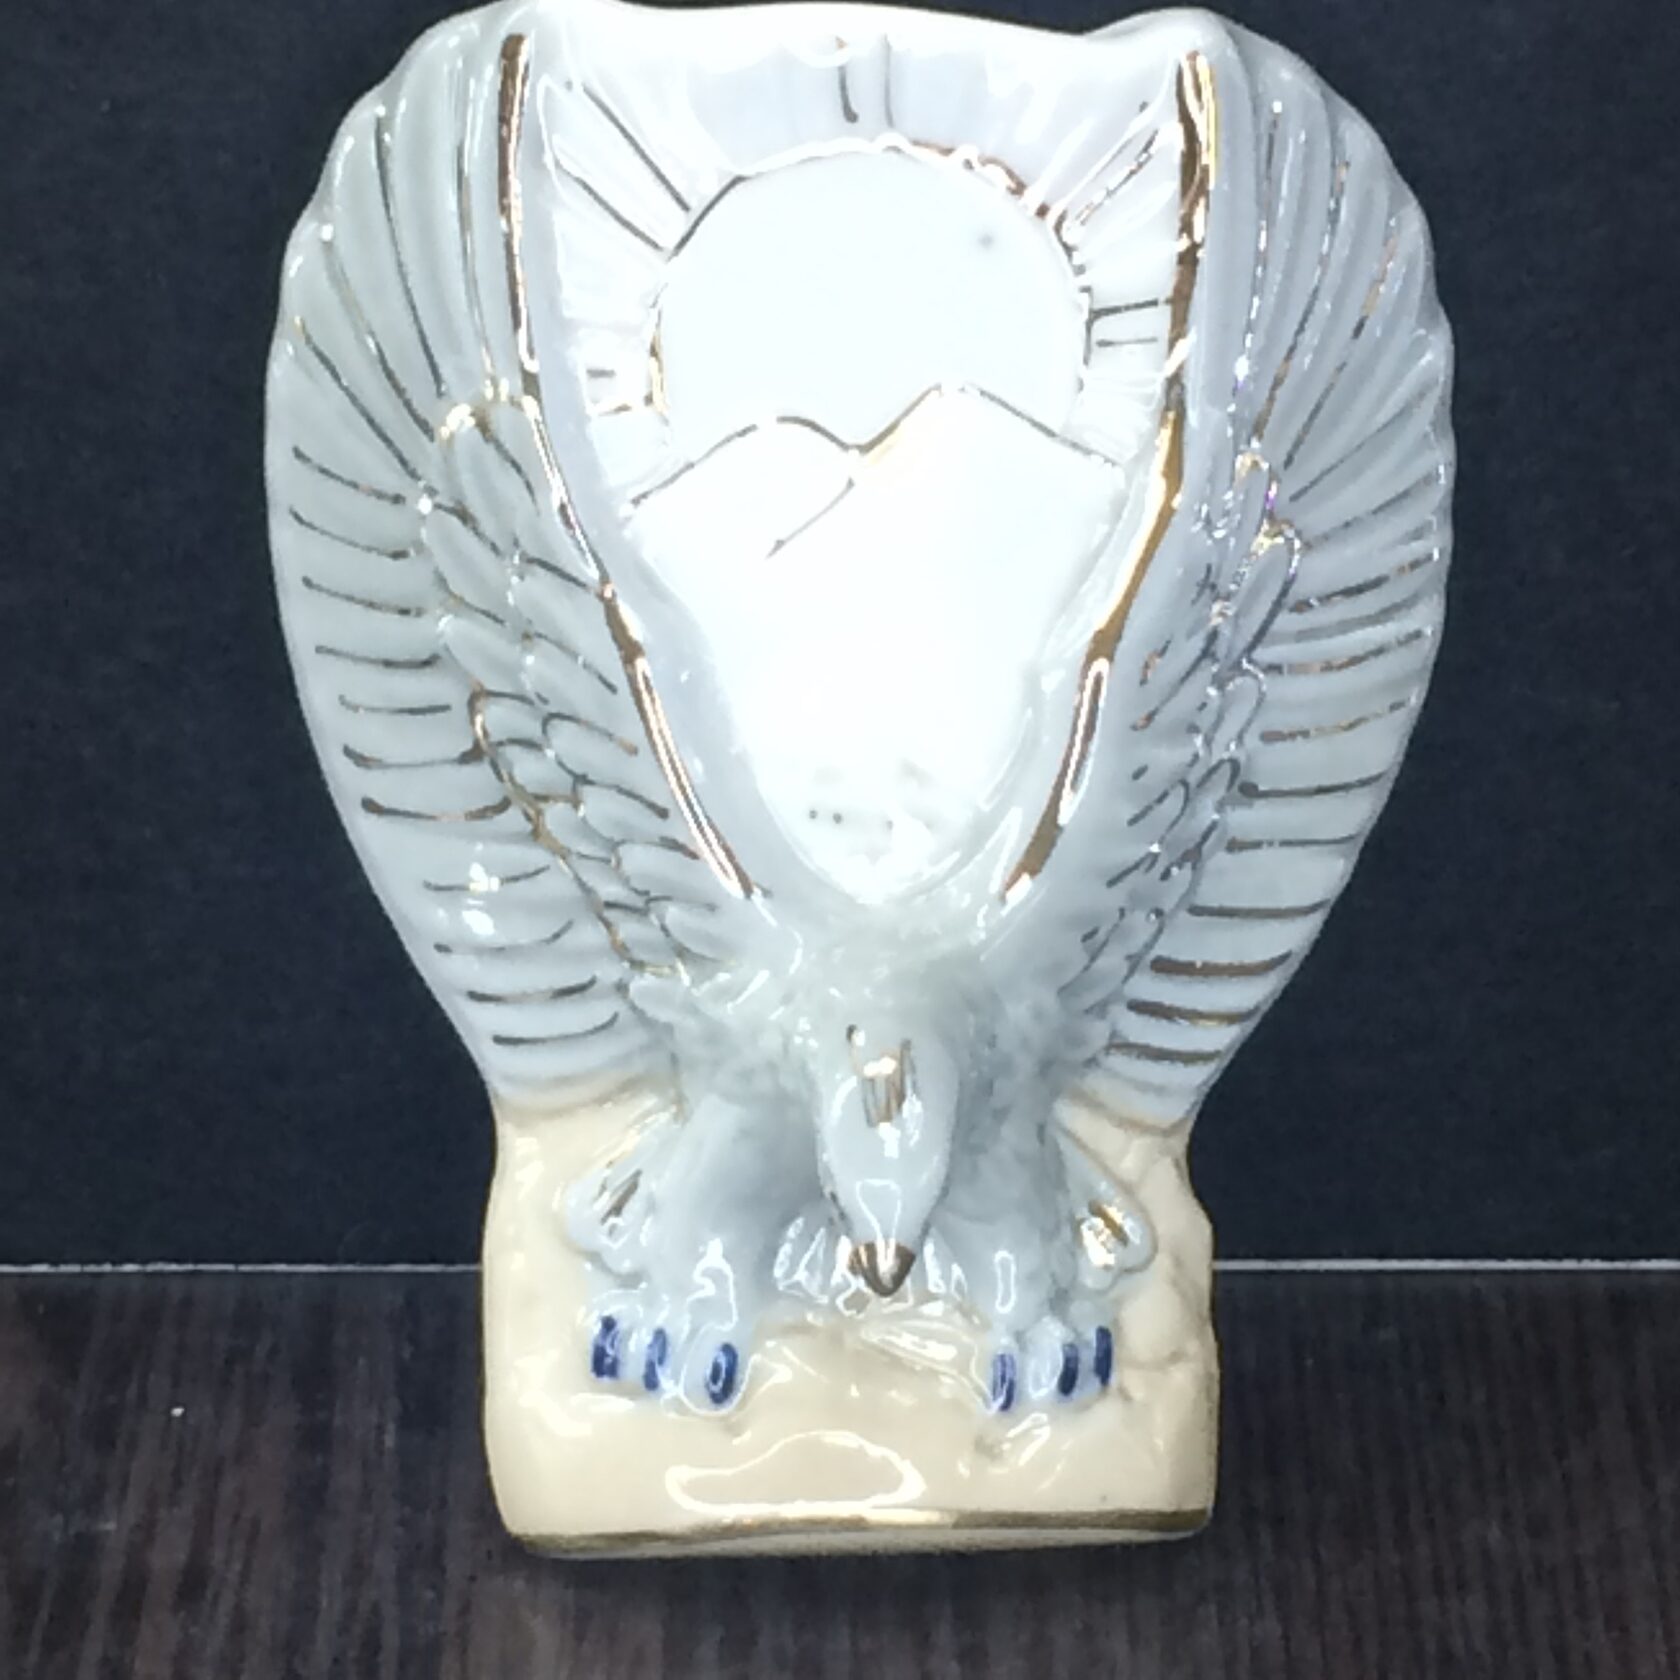 Купить магнит орел. Магнитный Орел. Керамическая сувениры Орел магнит. Купить фигурную вазу в Орле.